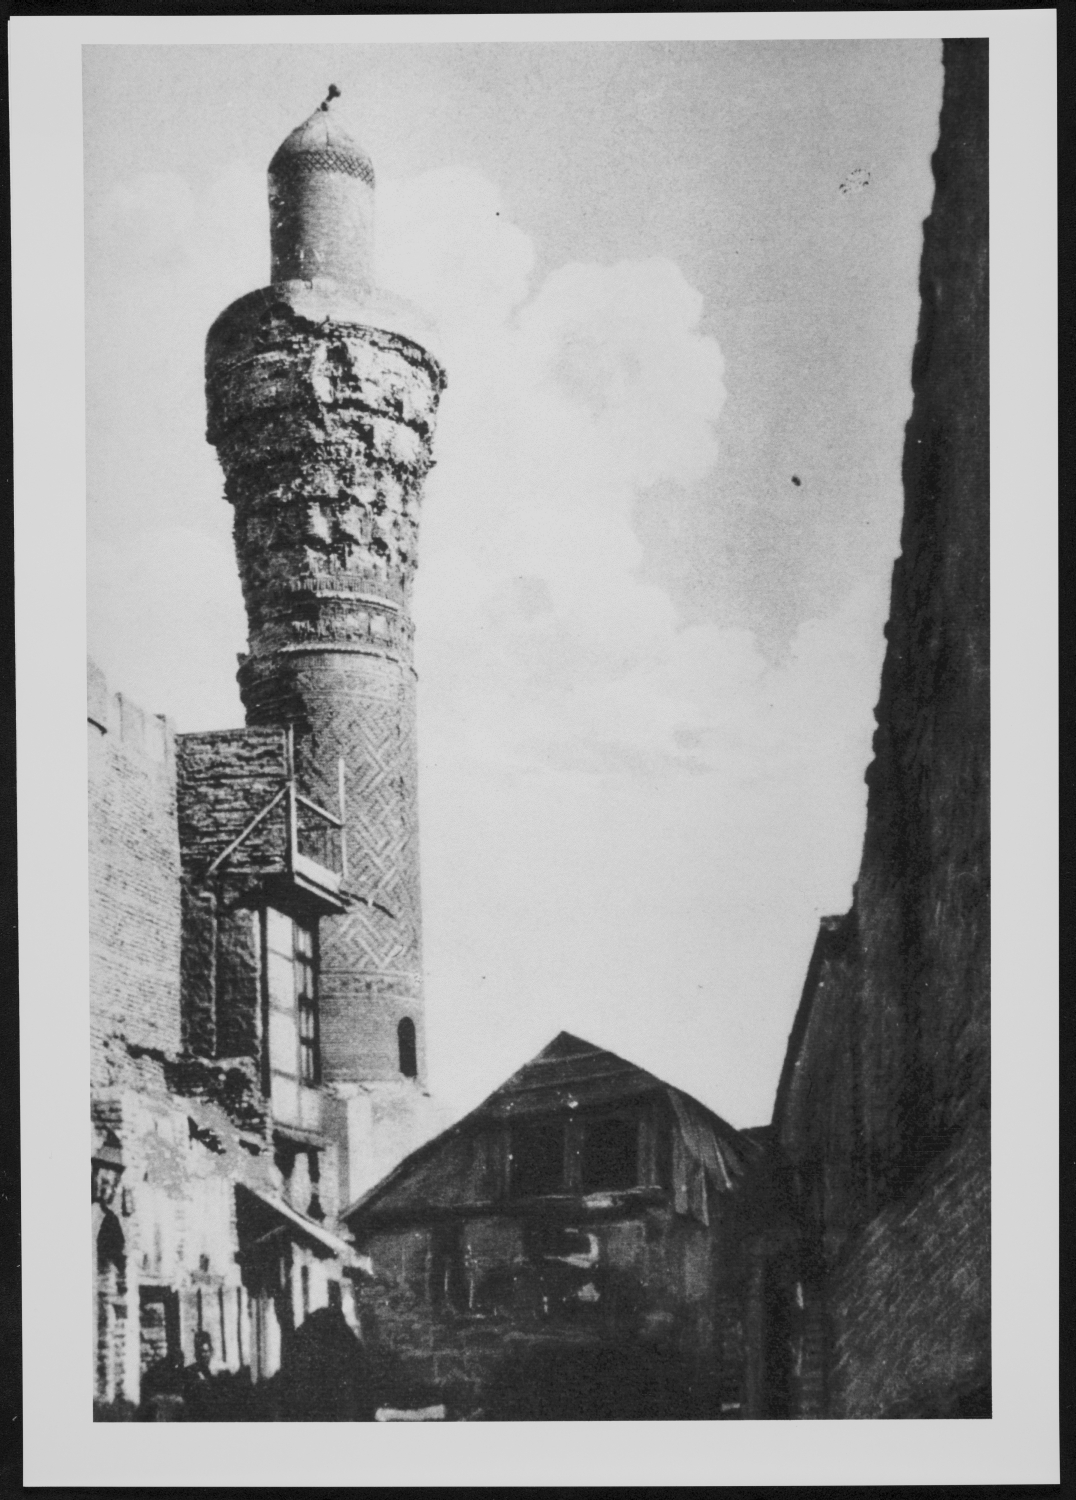 Suq al-Ghazl Minaret - Minaret prior to restoration